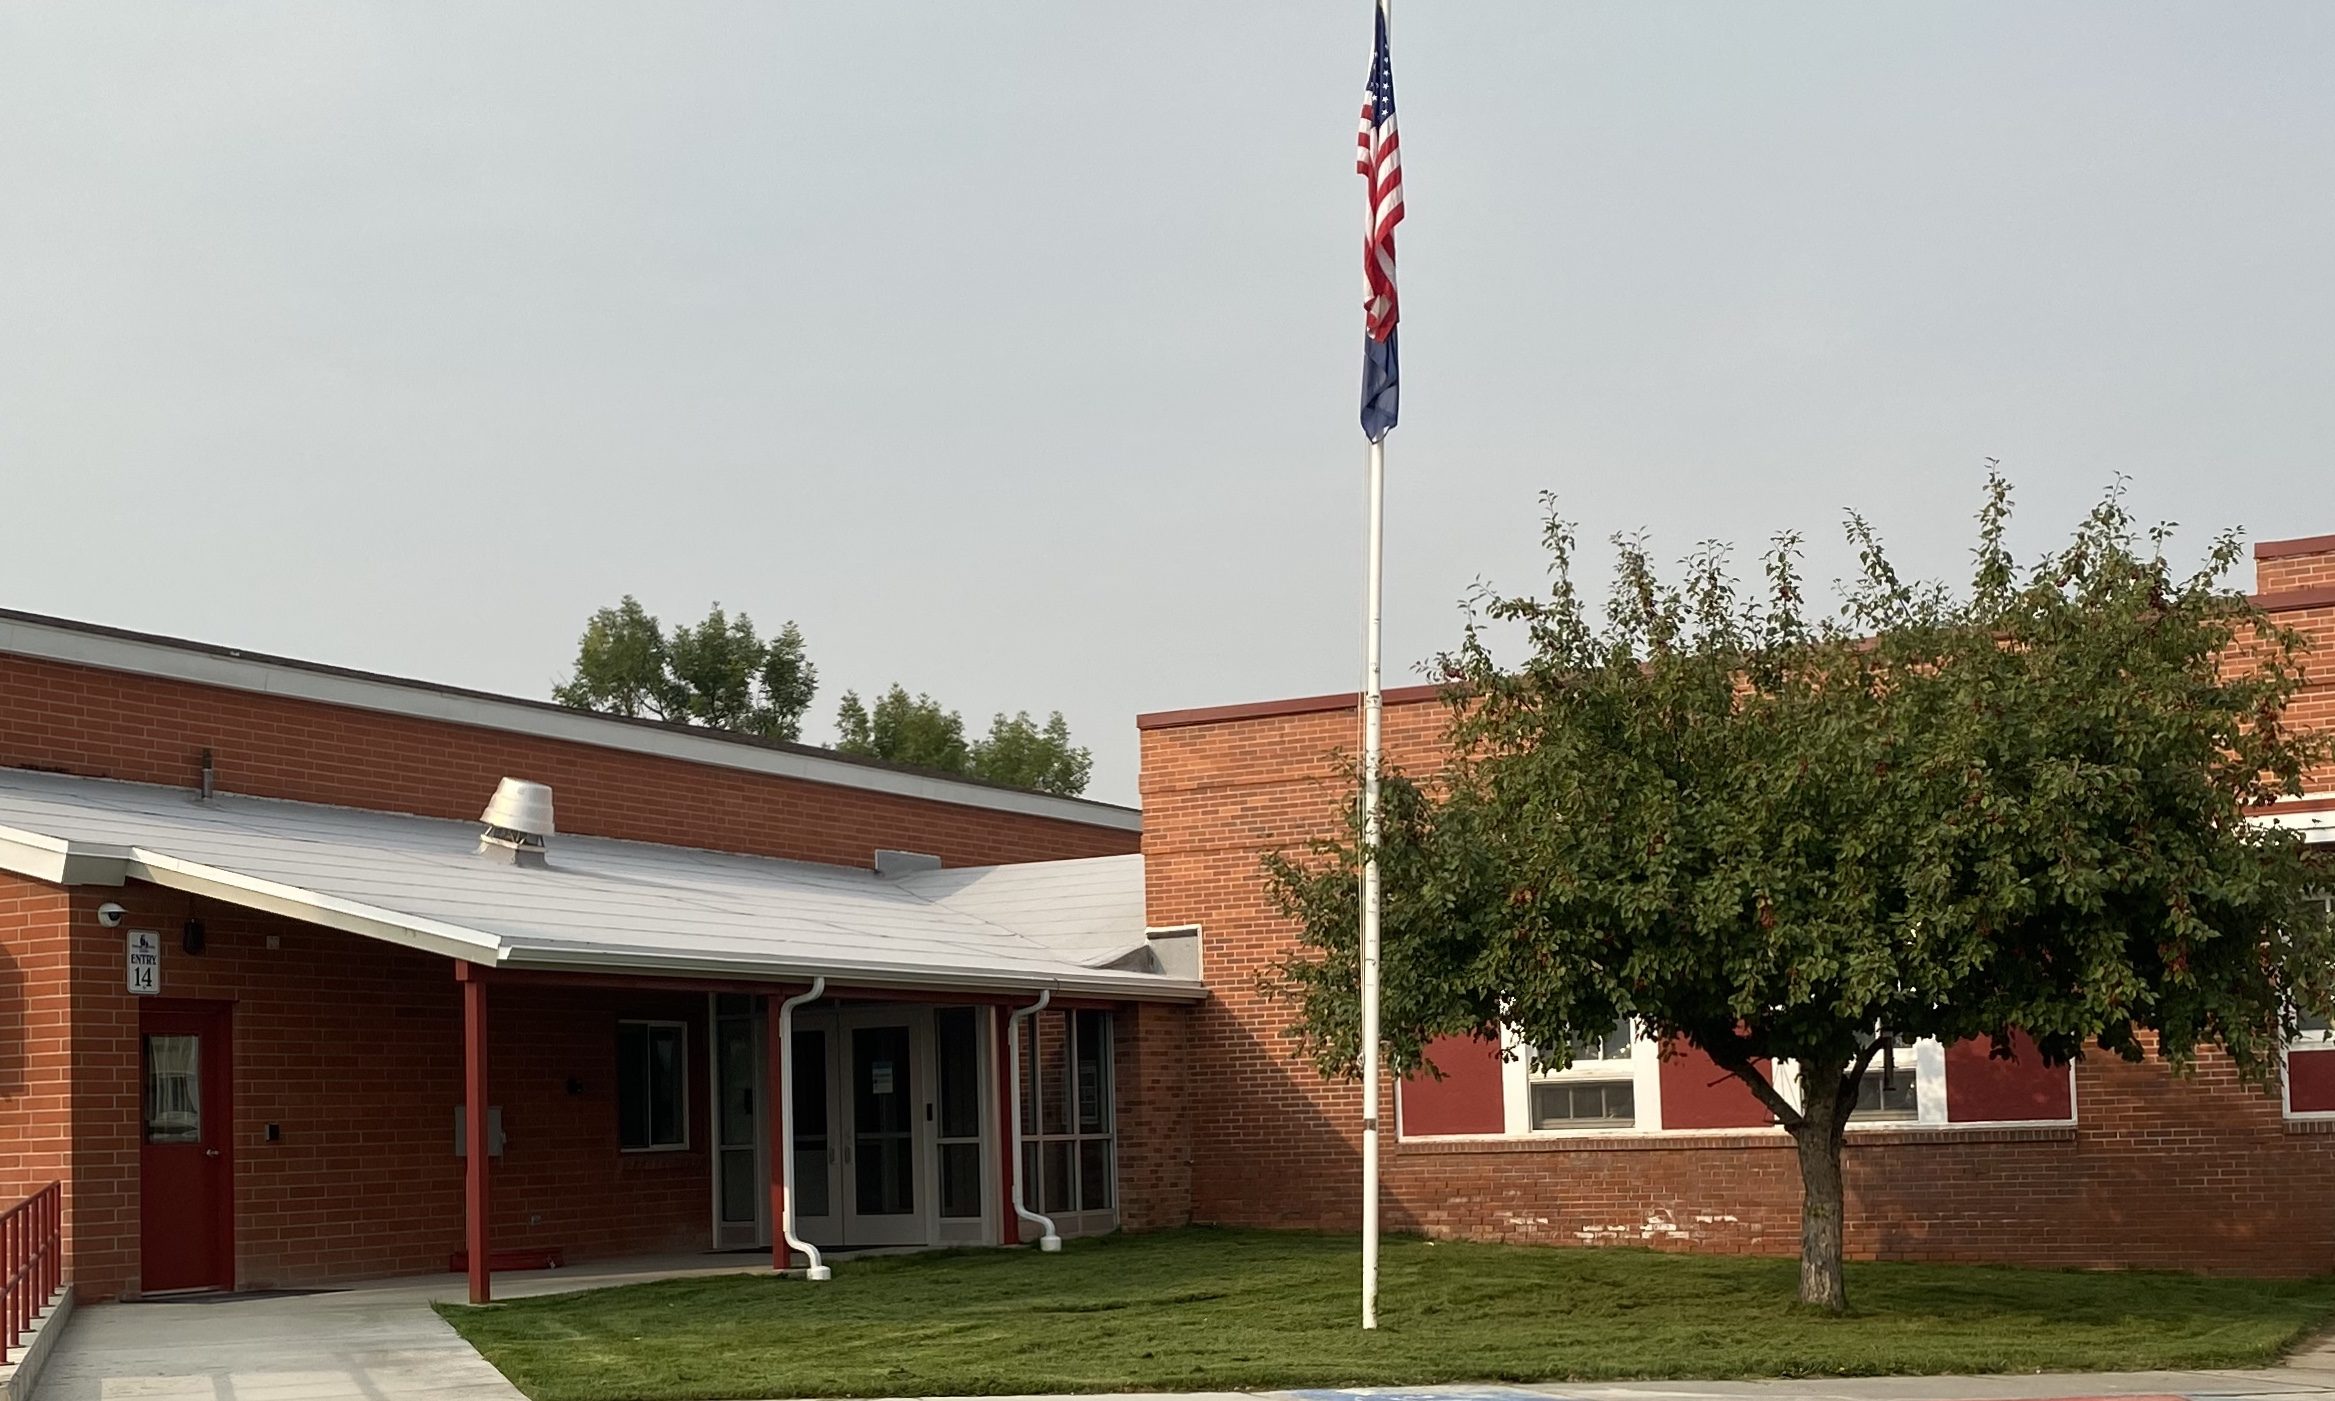 Kessler Elementary